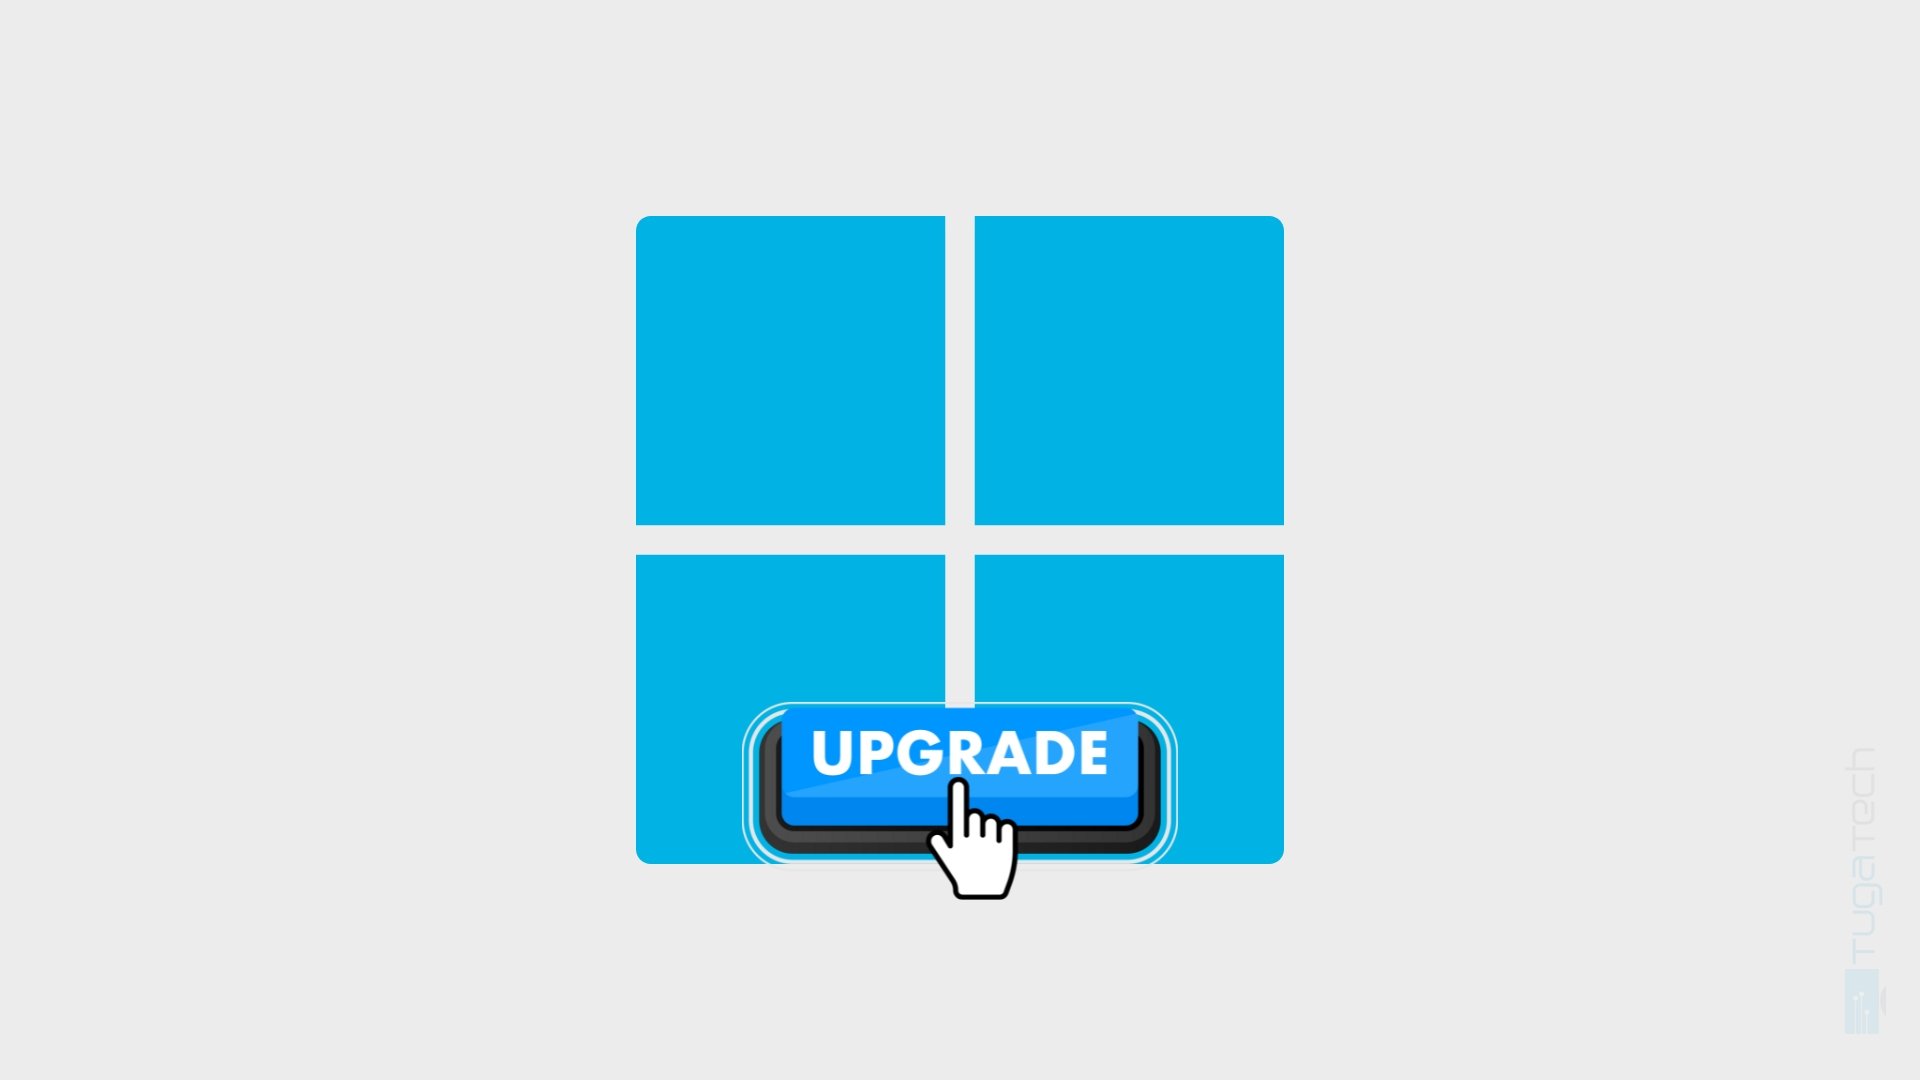 logo do Windows 10 com botão de upgrade